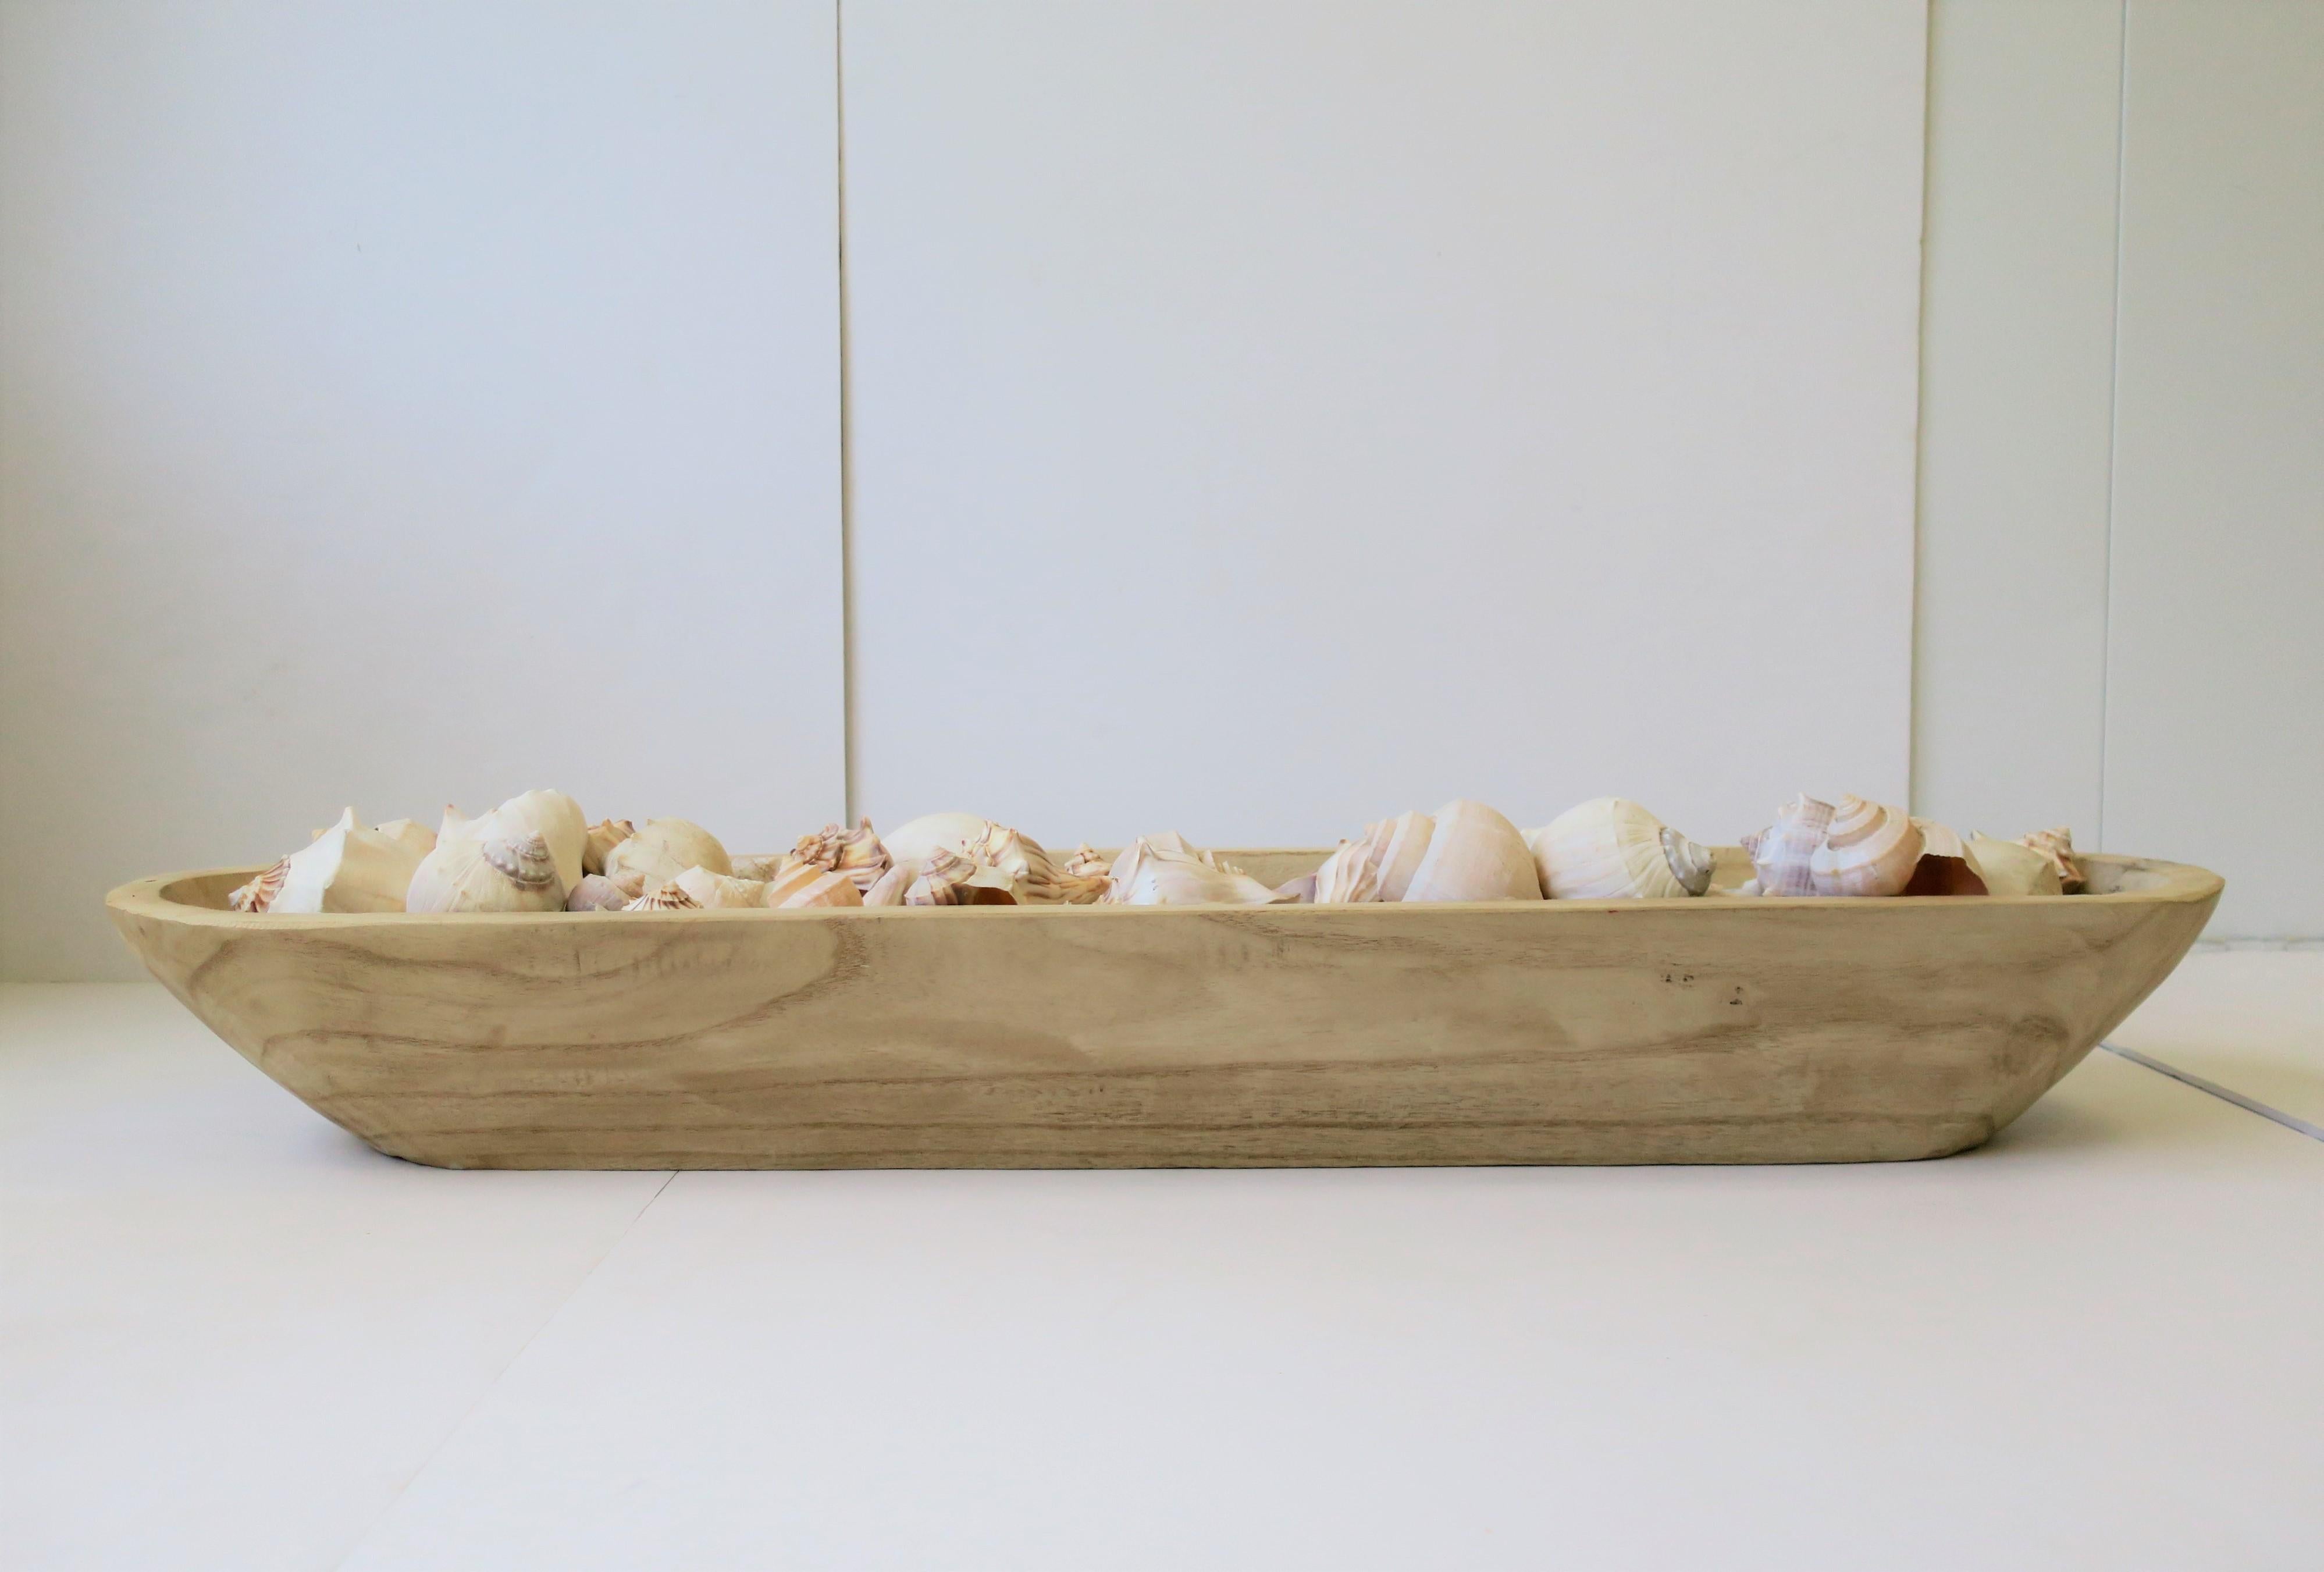 Un très beau groupe de coquillages naturels. Le vase contient plus de 50 coquillages blanc mat et beige/brun/blanc cassé dans un centre en bois sculpté à la main. Ce récipient rectangulaire en bois sculpté à la main et aux coins arrondis contient